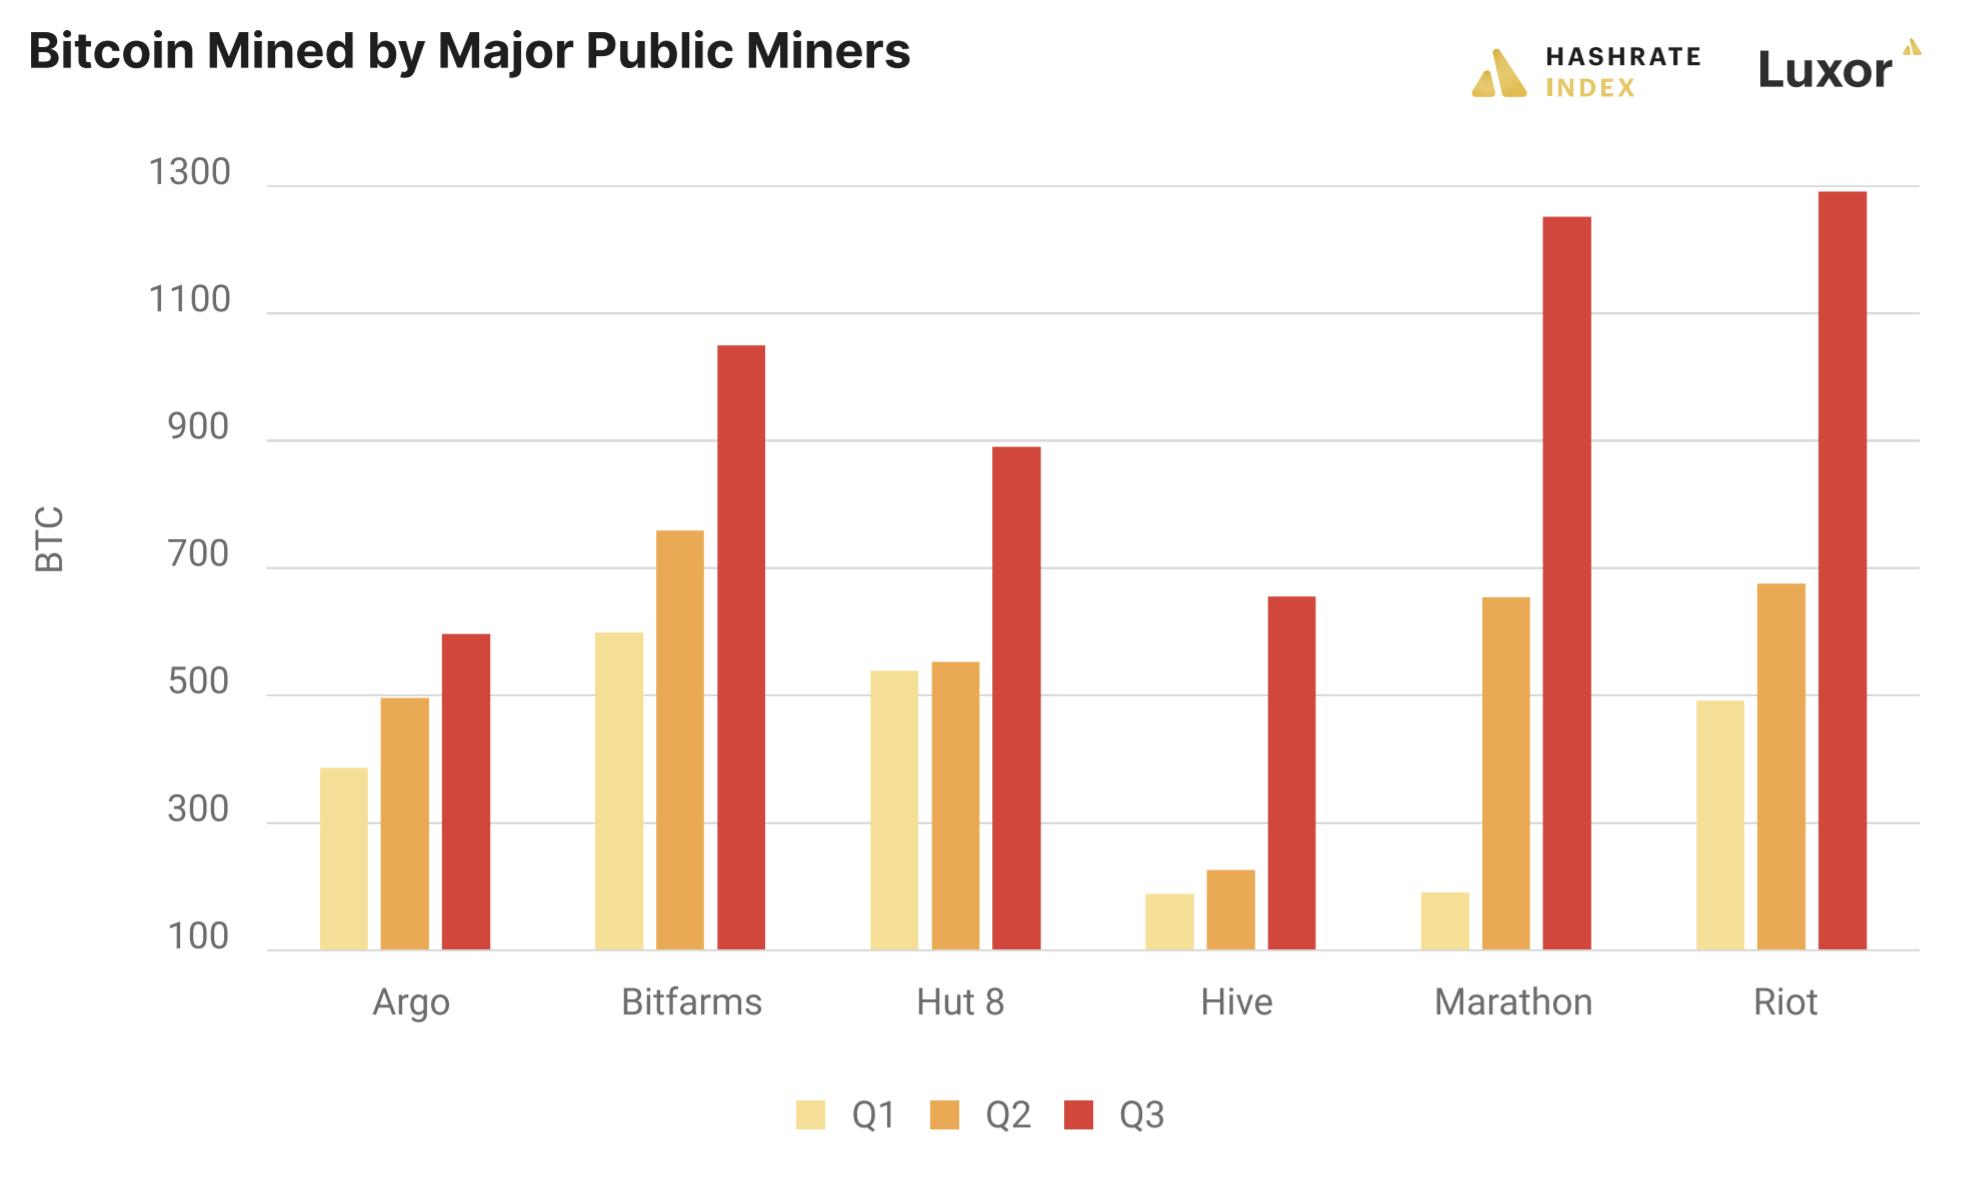 Public bitcoin miner Q1, Q2, and Q3 production